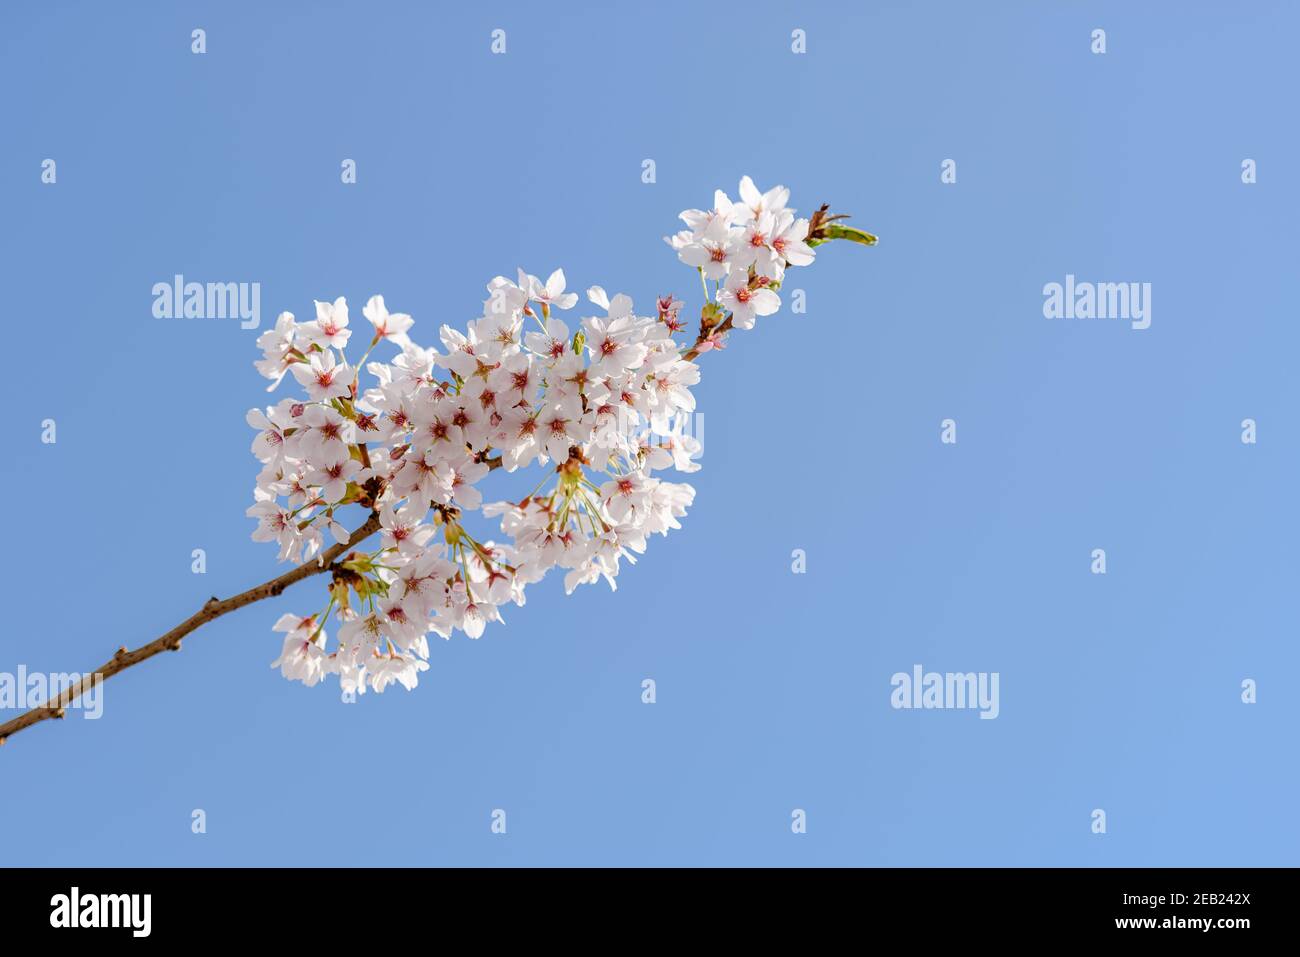 Una rama con cerezos en flor contra el cielo azul claro Foto de stock